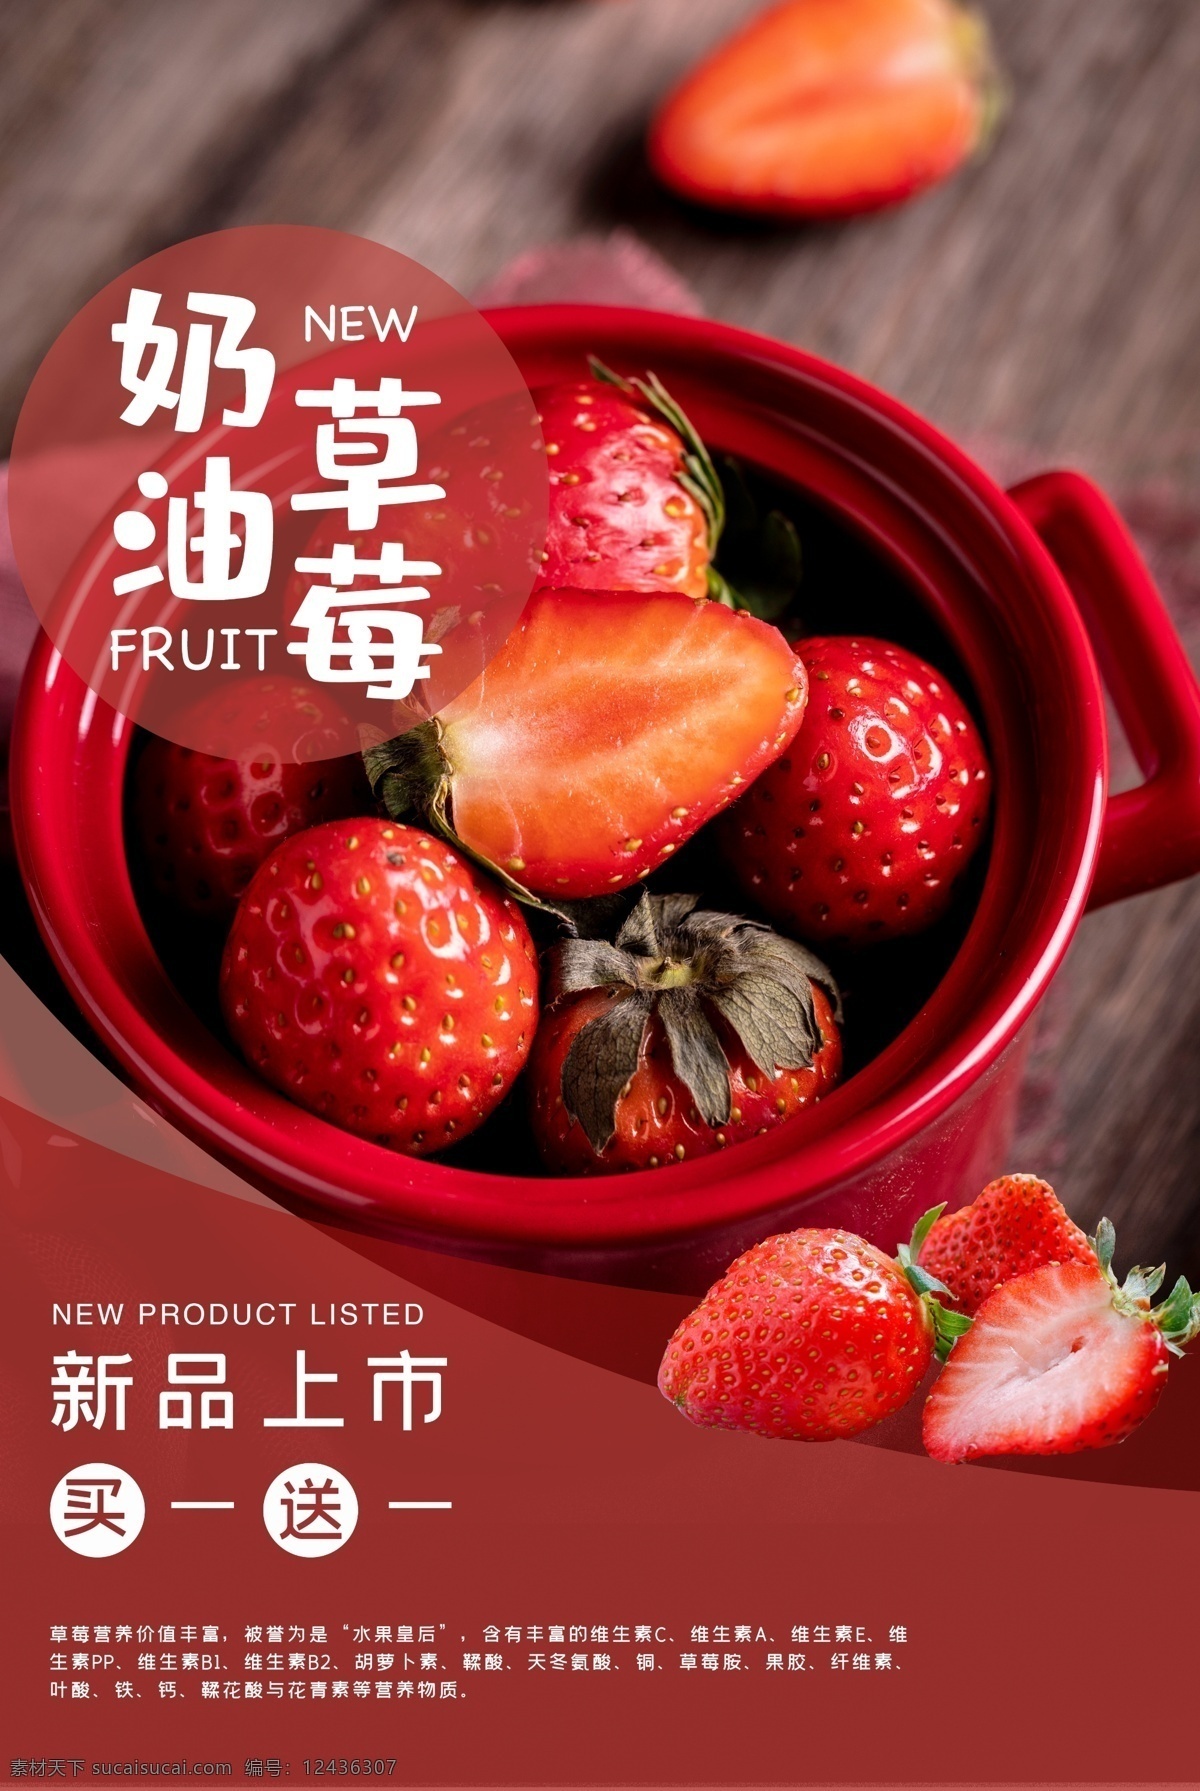 奶油 草莓 水果 活动 宣传海报 素材图片 奶油草莓 宣传 海报 餐饮美食 类